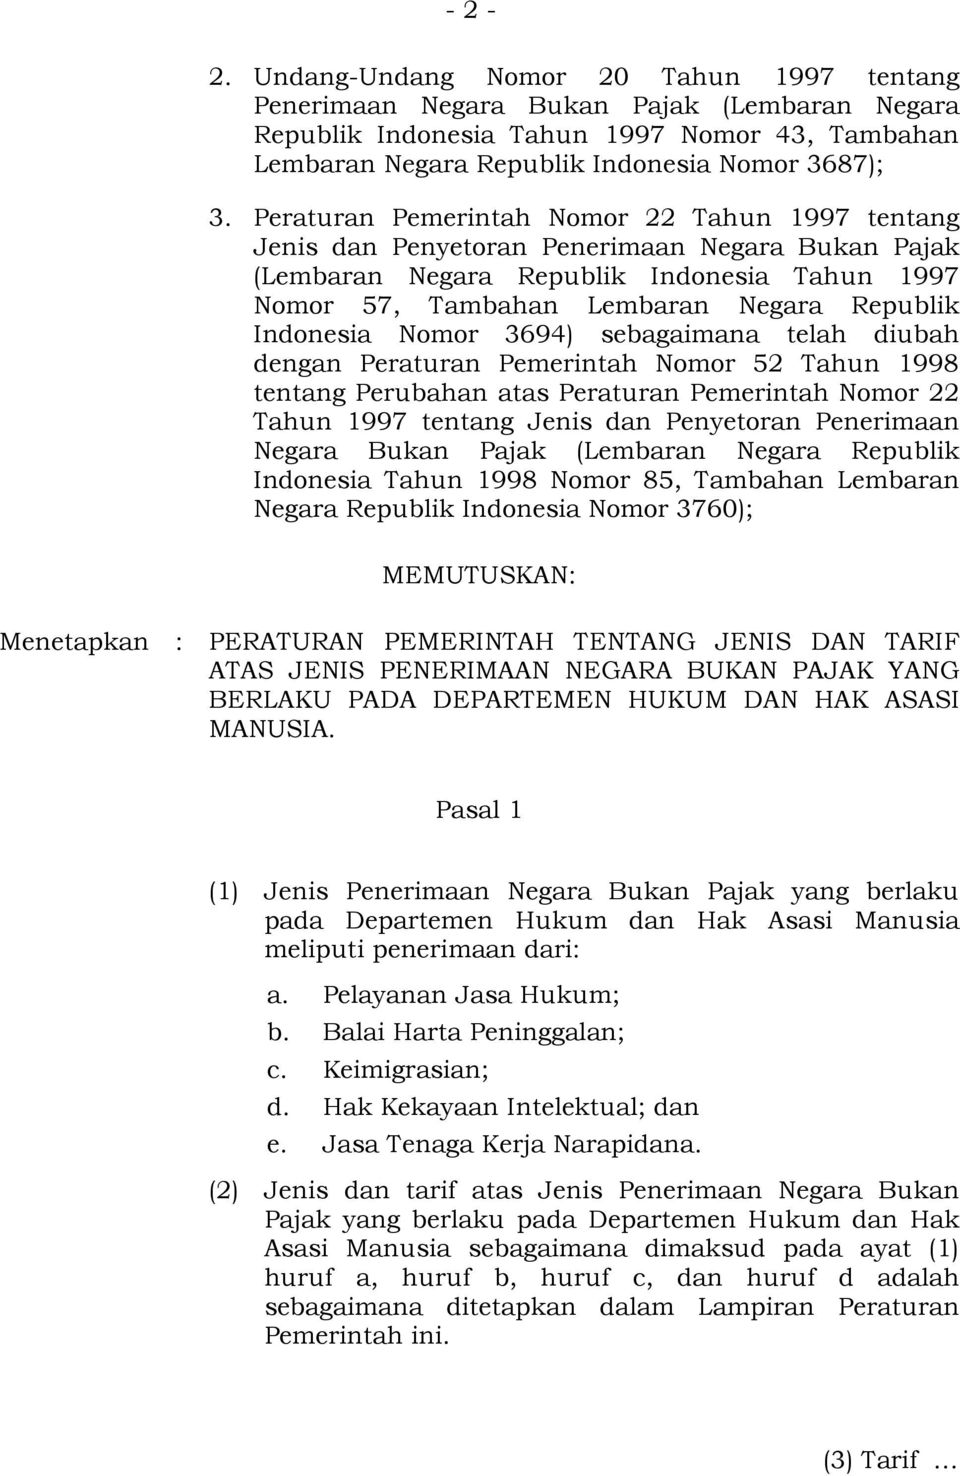 Indonesia Nomor 3694) sebagaimana telah diubah dengan Peraturan Pemerintah Nomor 52 Tahun 1998 tentang Perubahan atas Peraturan Pemerintah Nomor 22 Tahun 1997 tentang Jenis dan Penyetoran Penerimaan